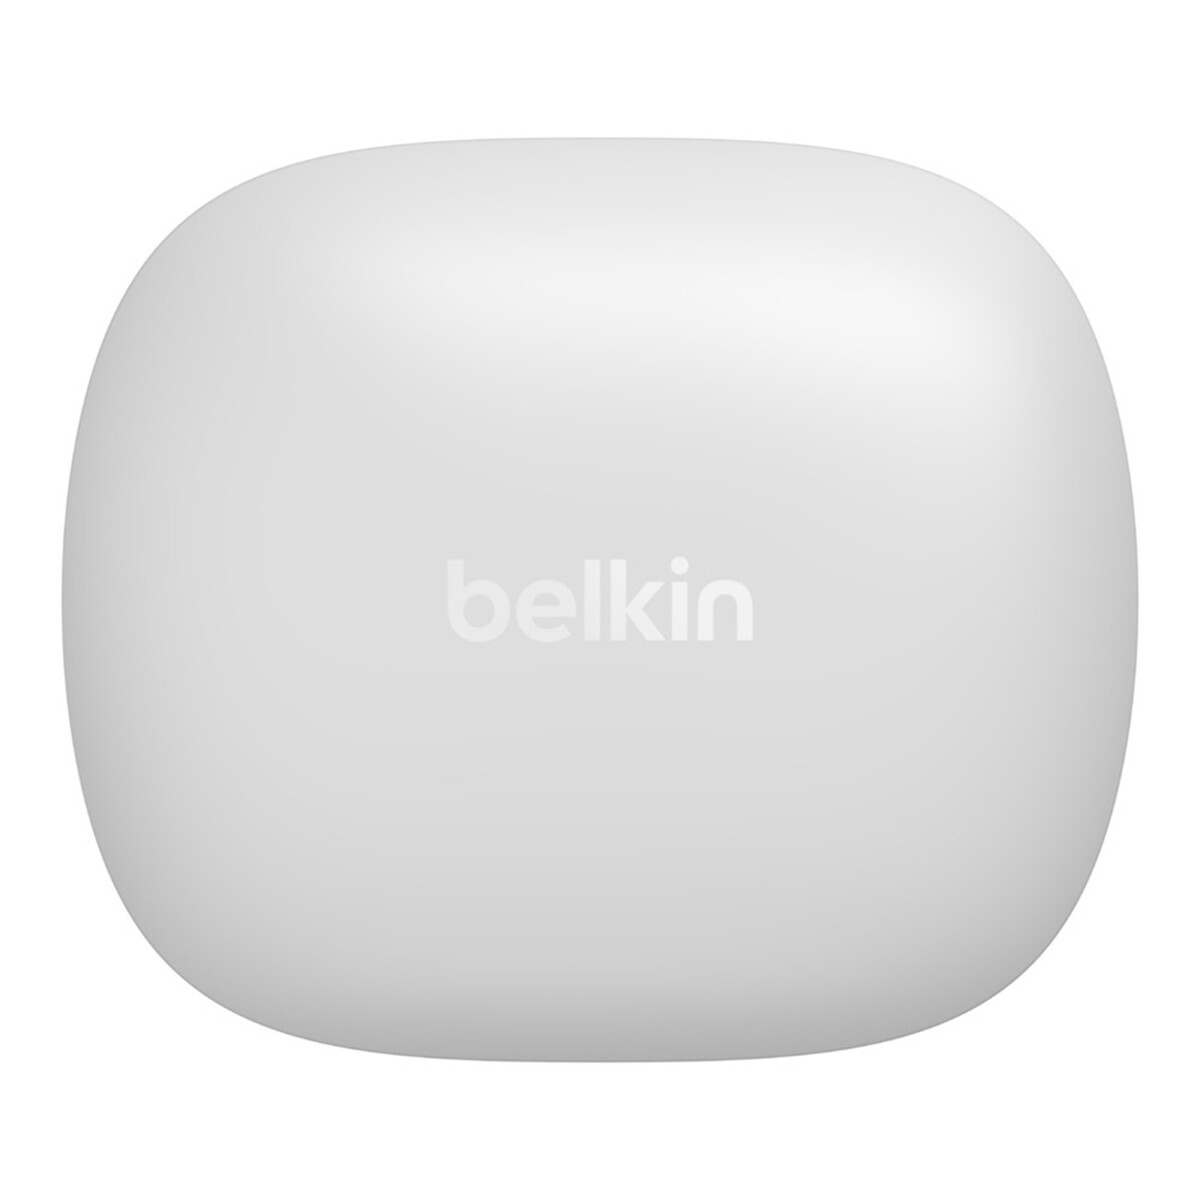 Belkin Soundform Rise True Wireless Earbuds White